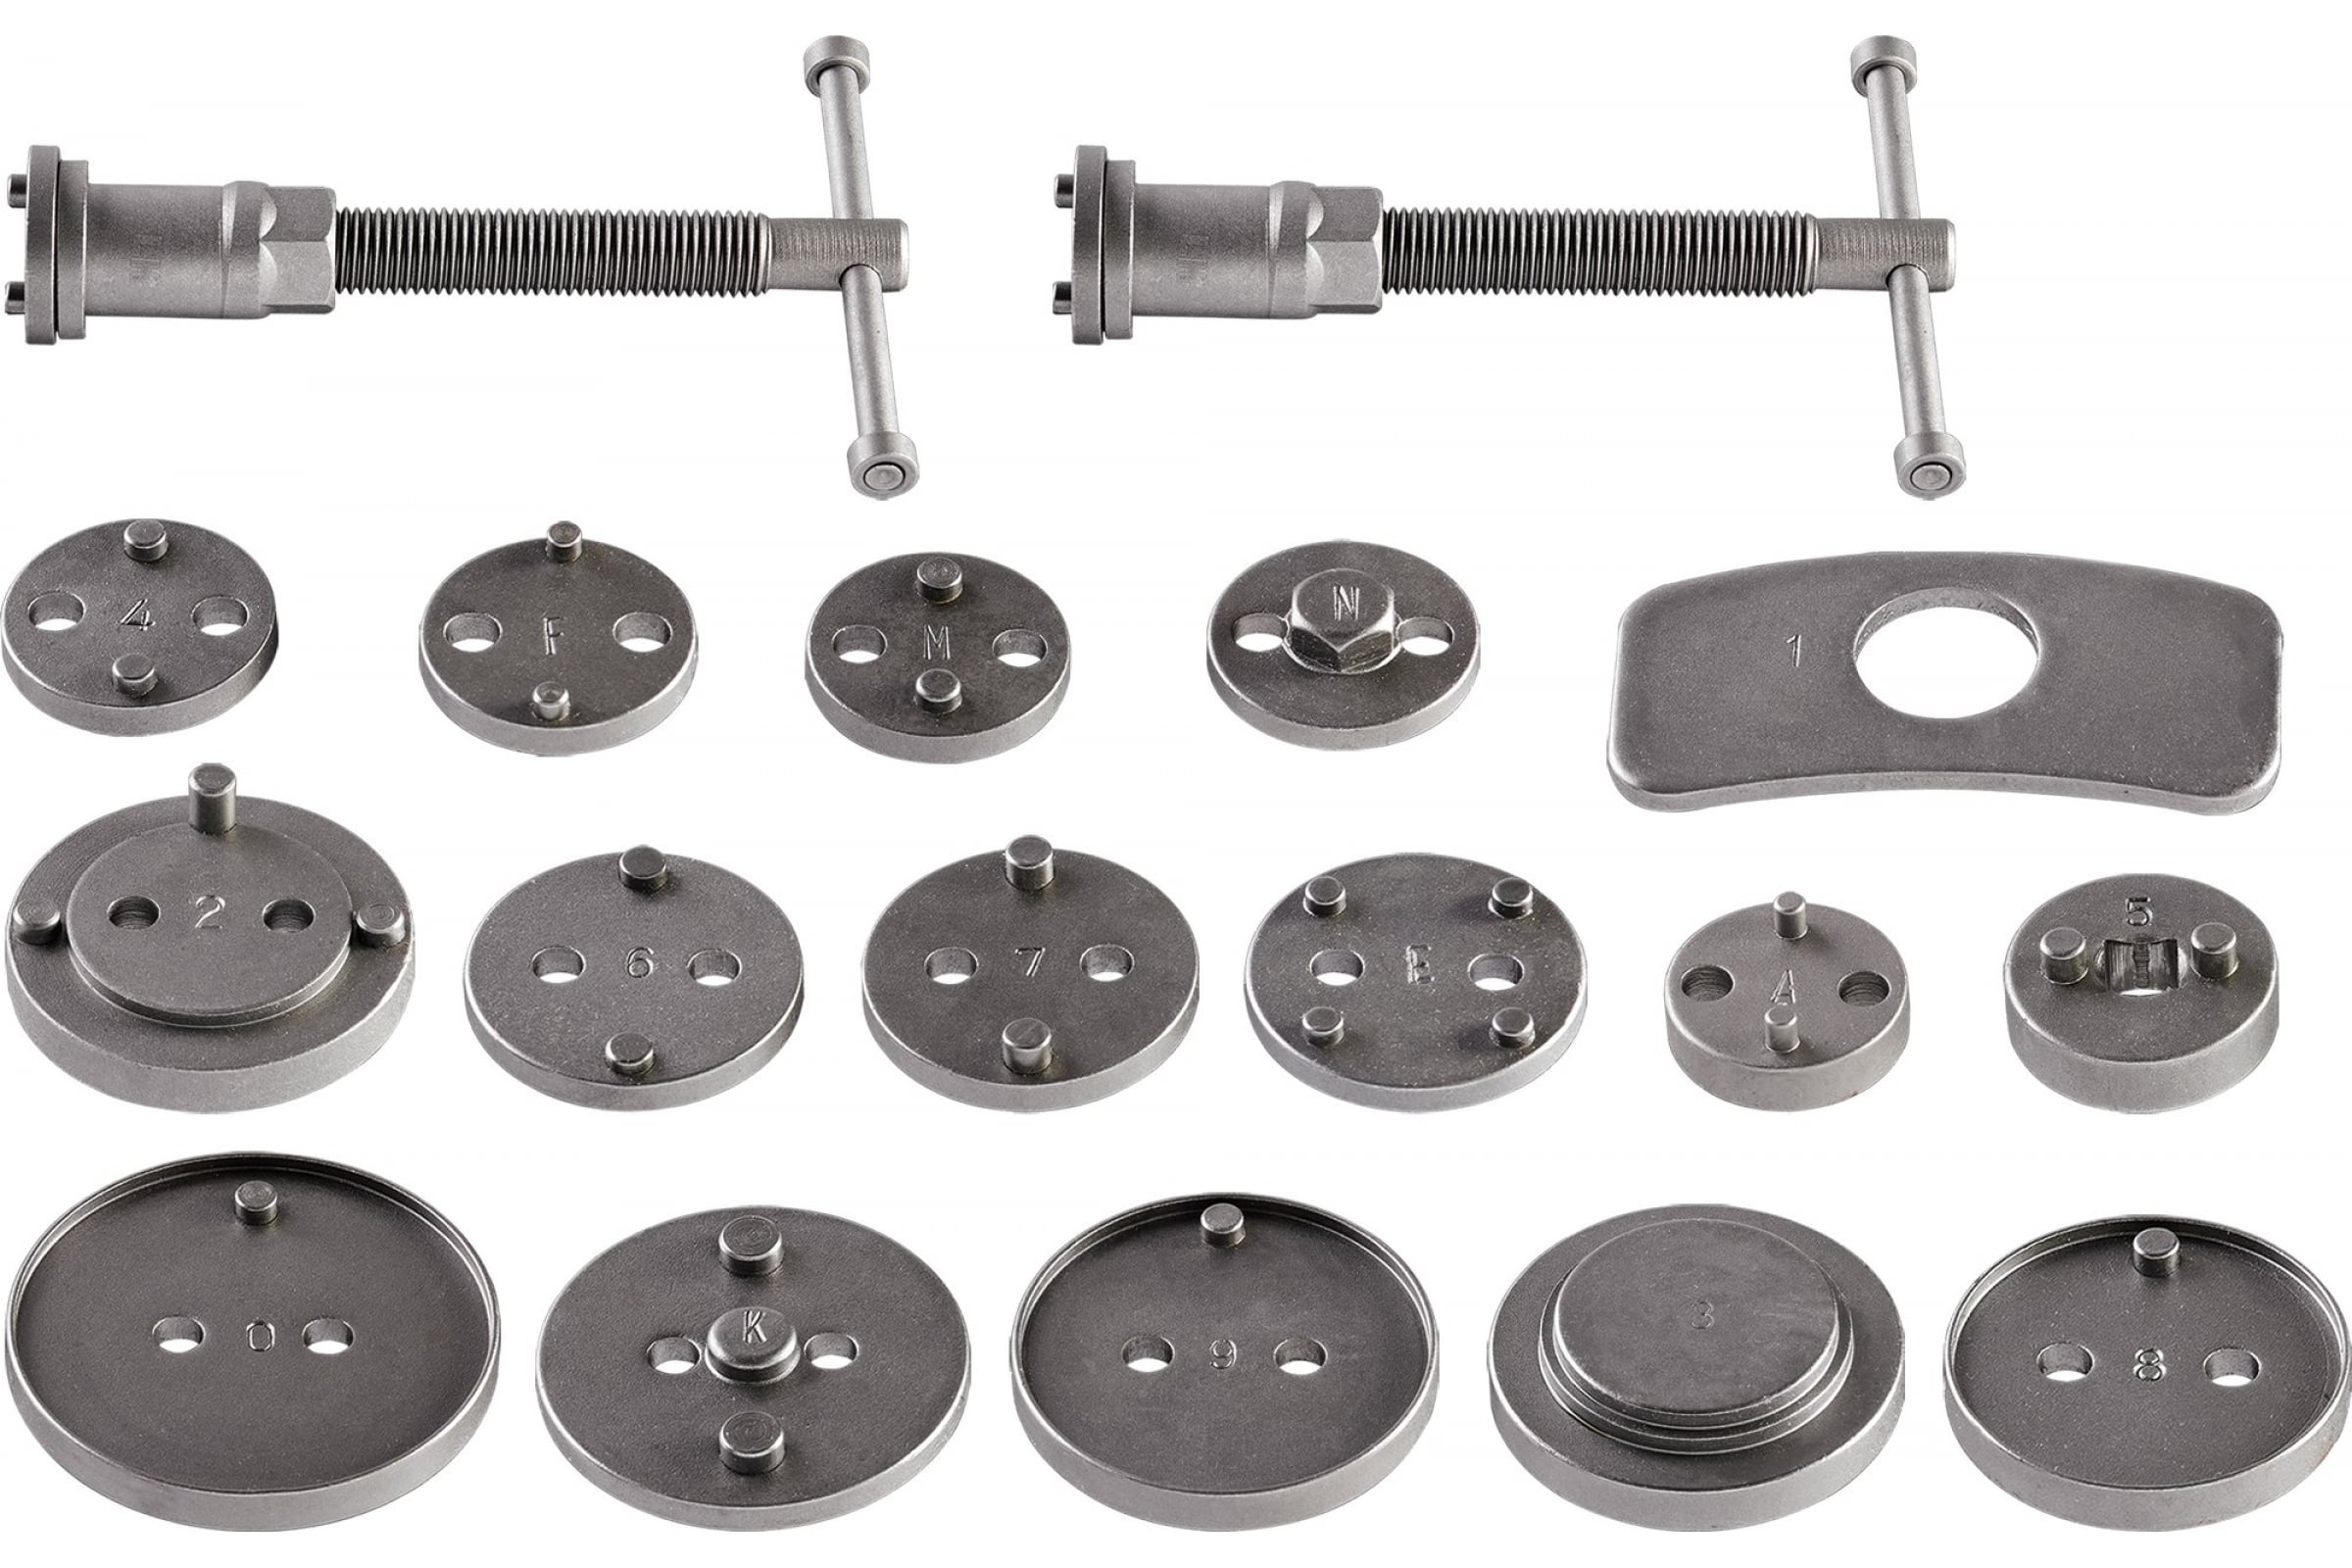 фото Neo tools комплект приспособлений для обслуживания тoрмoзных цилиндров, 18 шт. 11-122